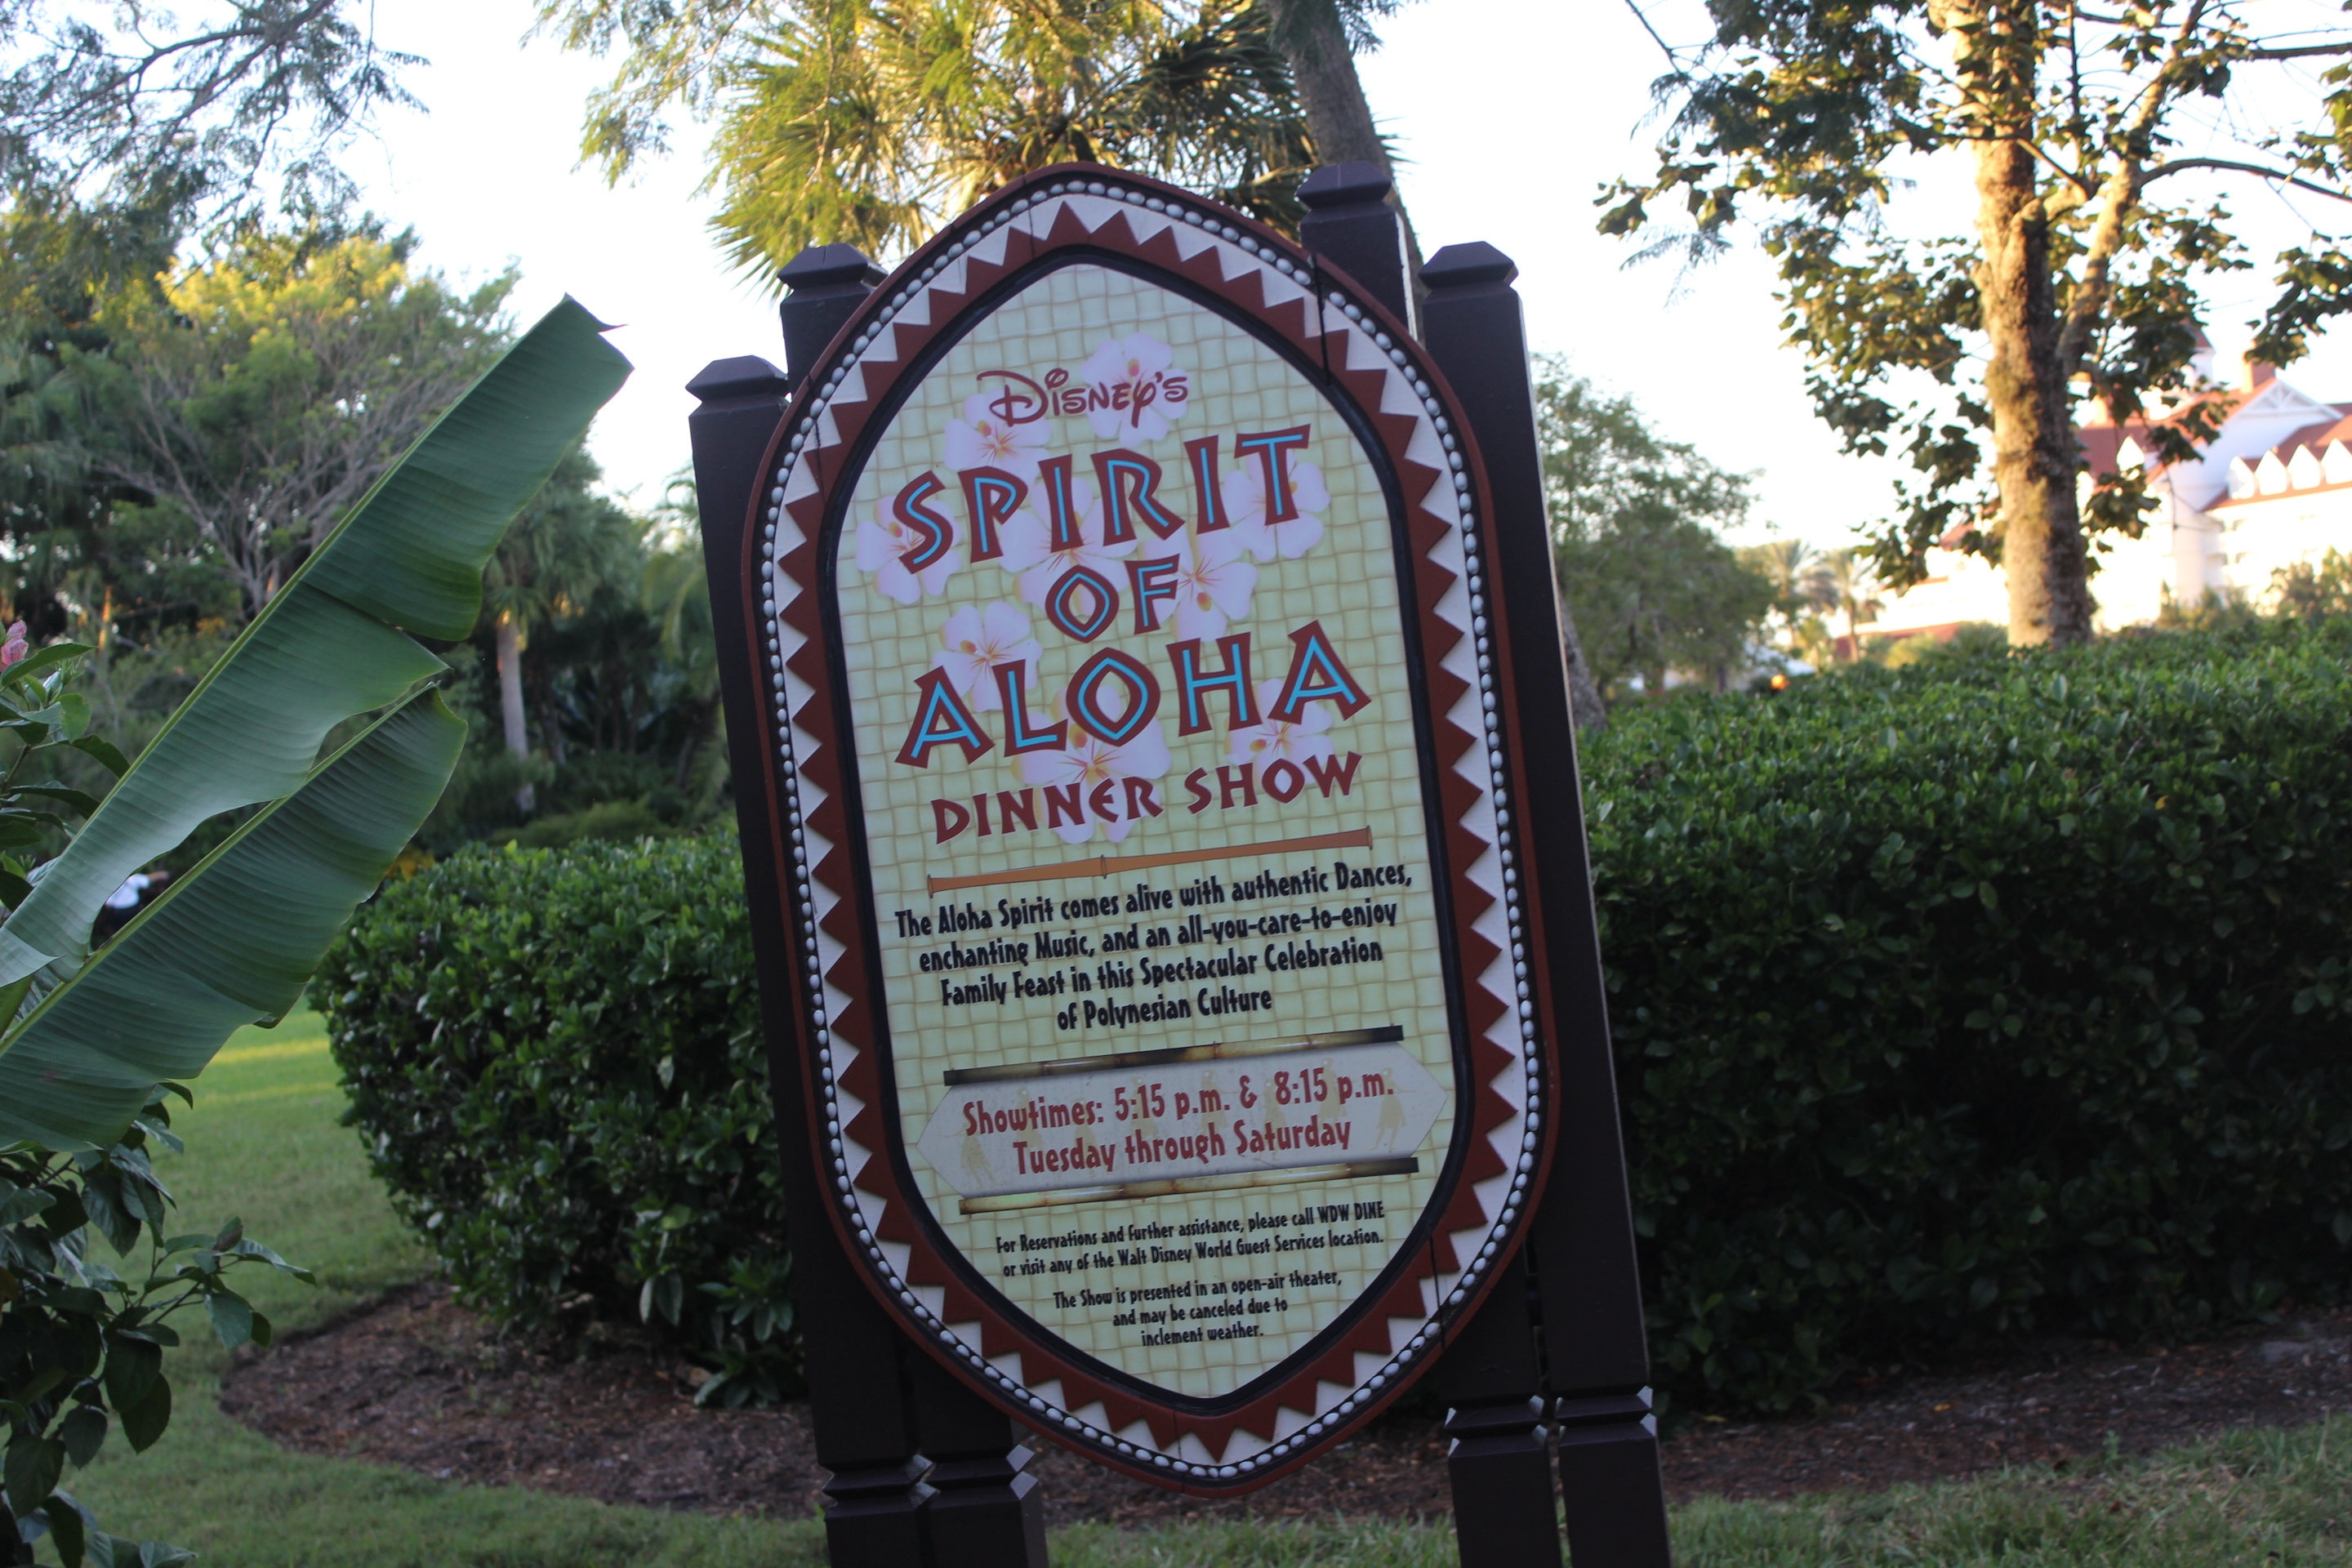 Disney’s Spirit of Aloha Dinner Show